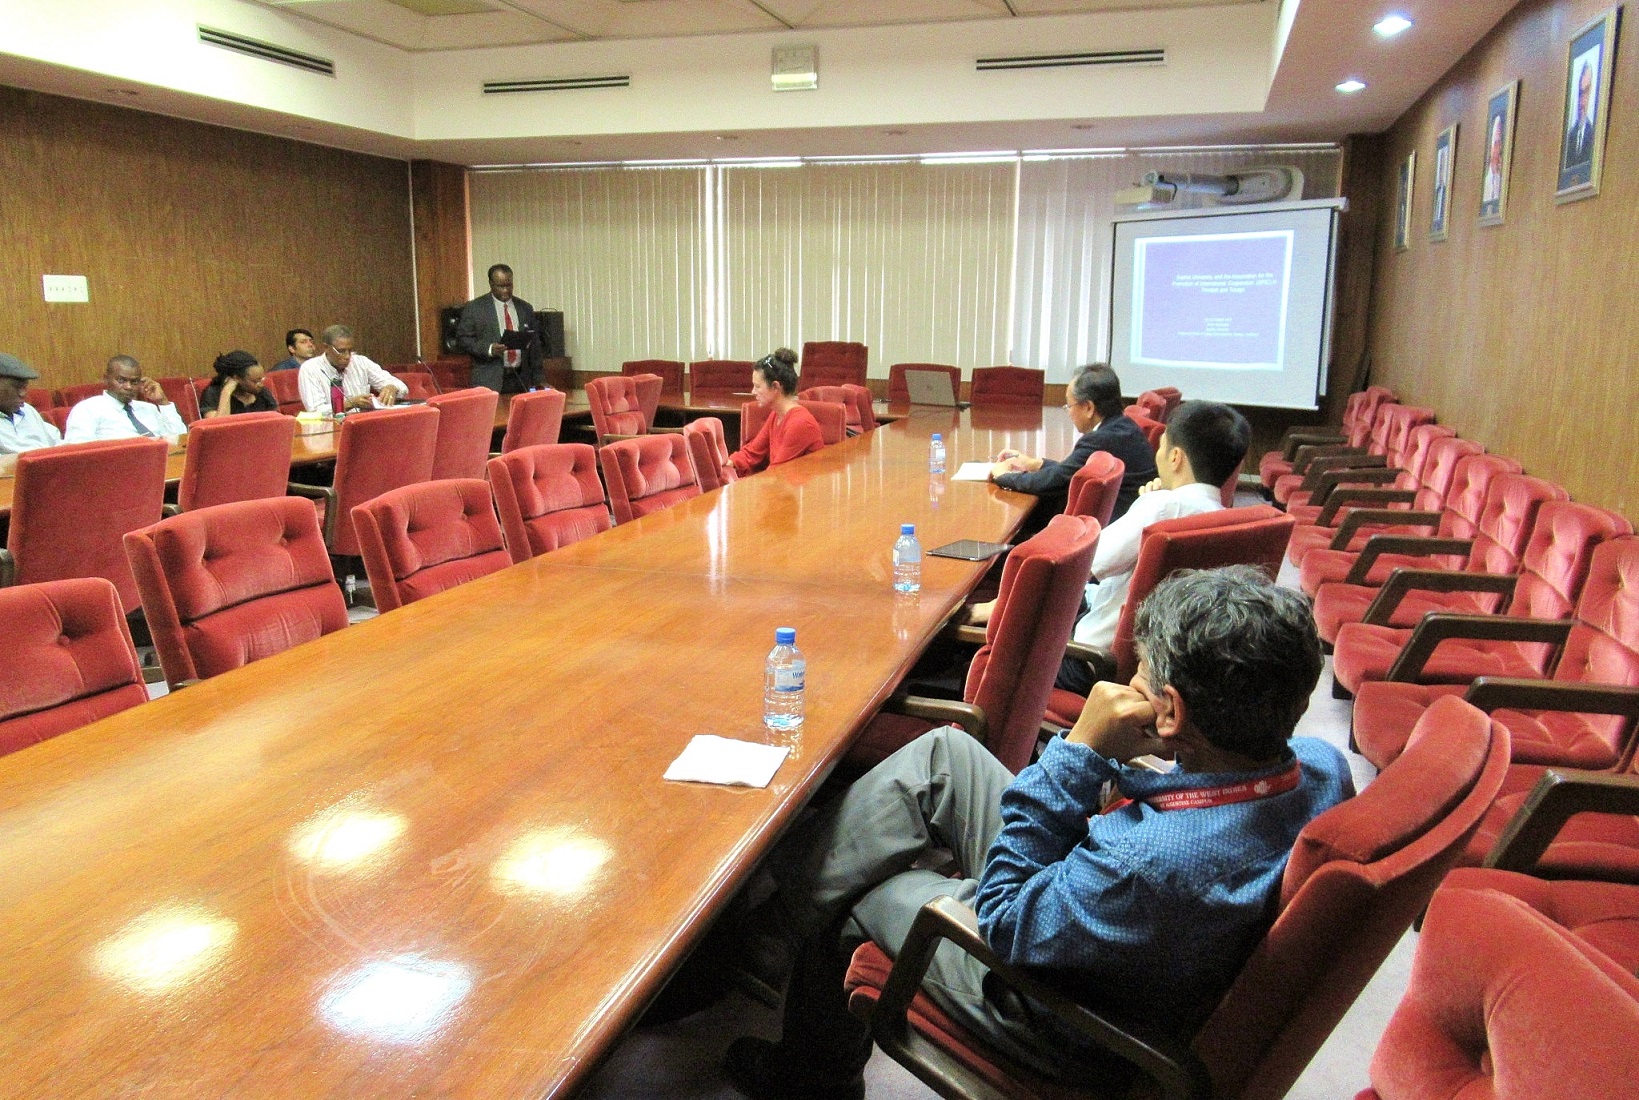 Environmental Seminar held in Trinidad & Tobago